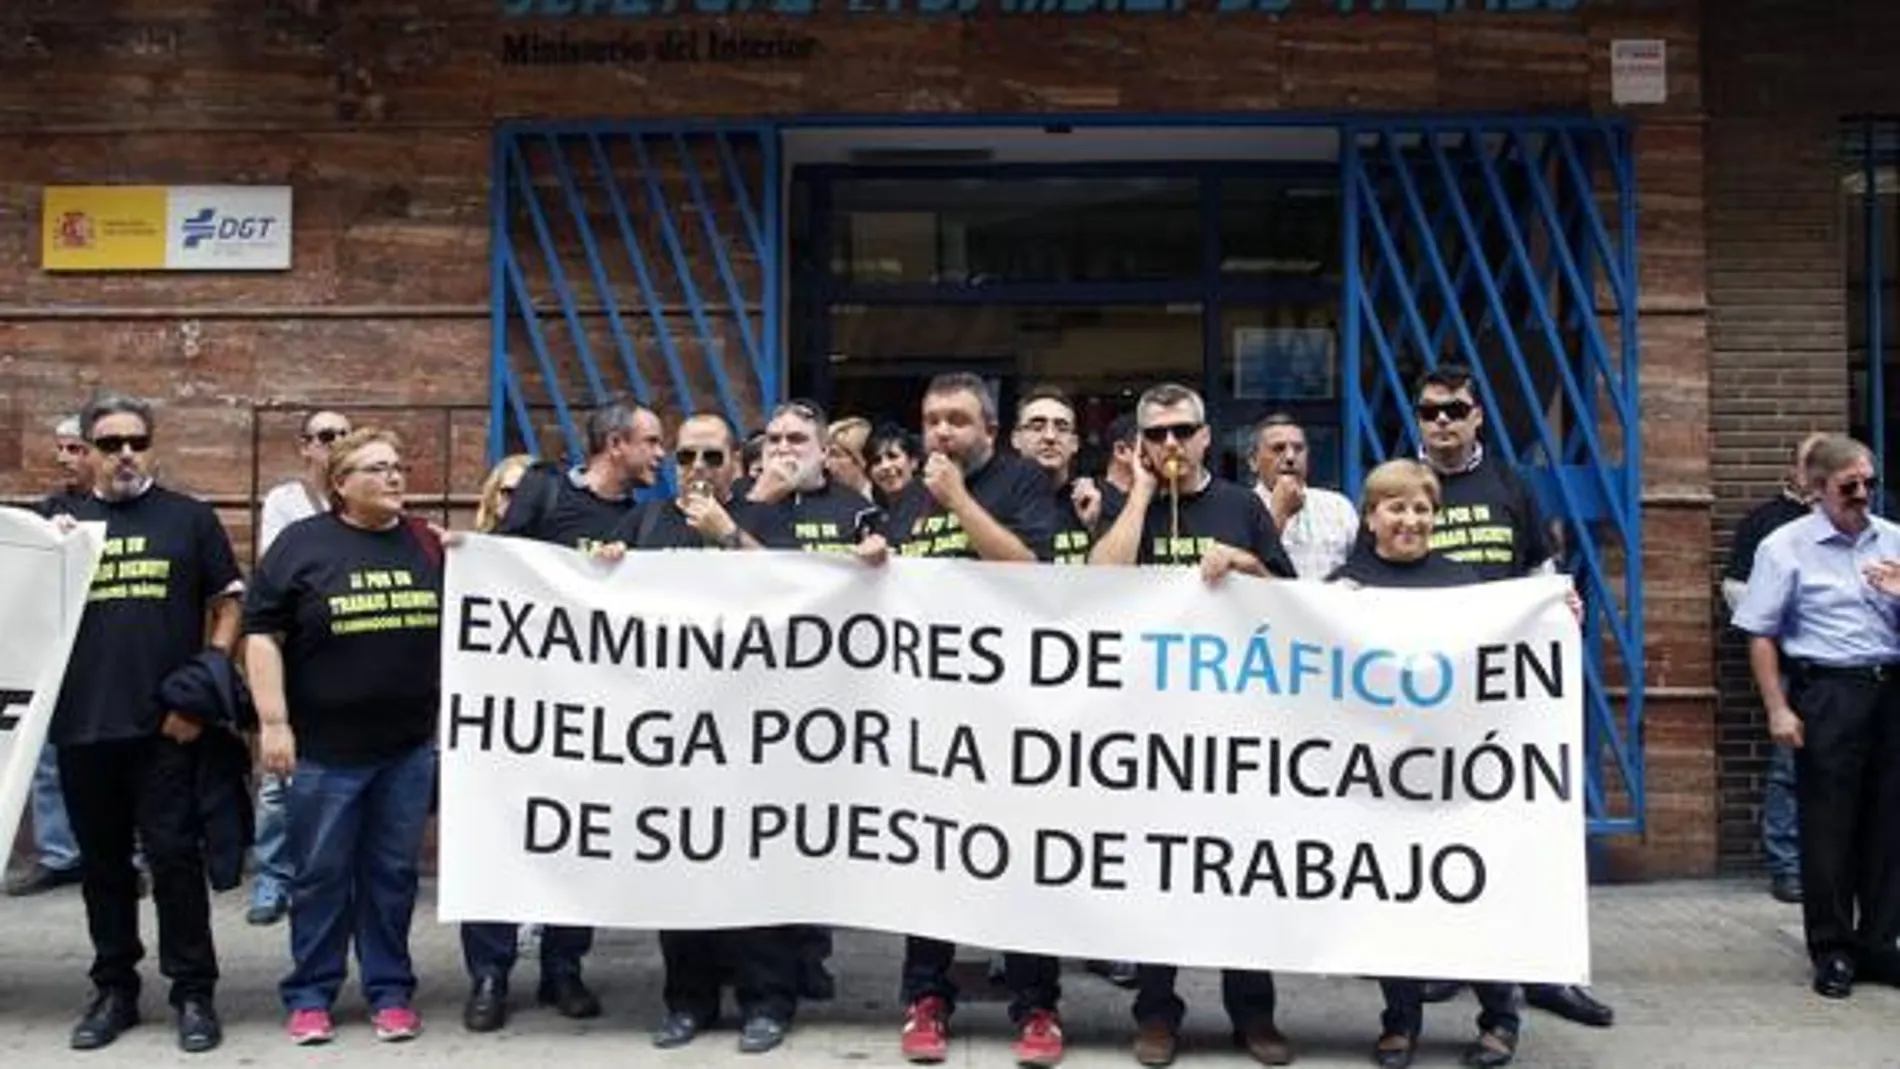 Protesta de los examinadores de Tráfico